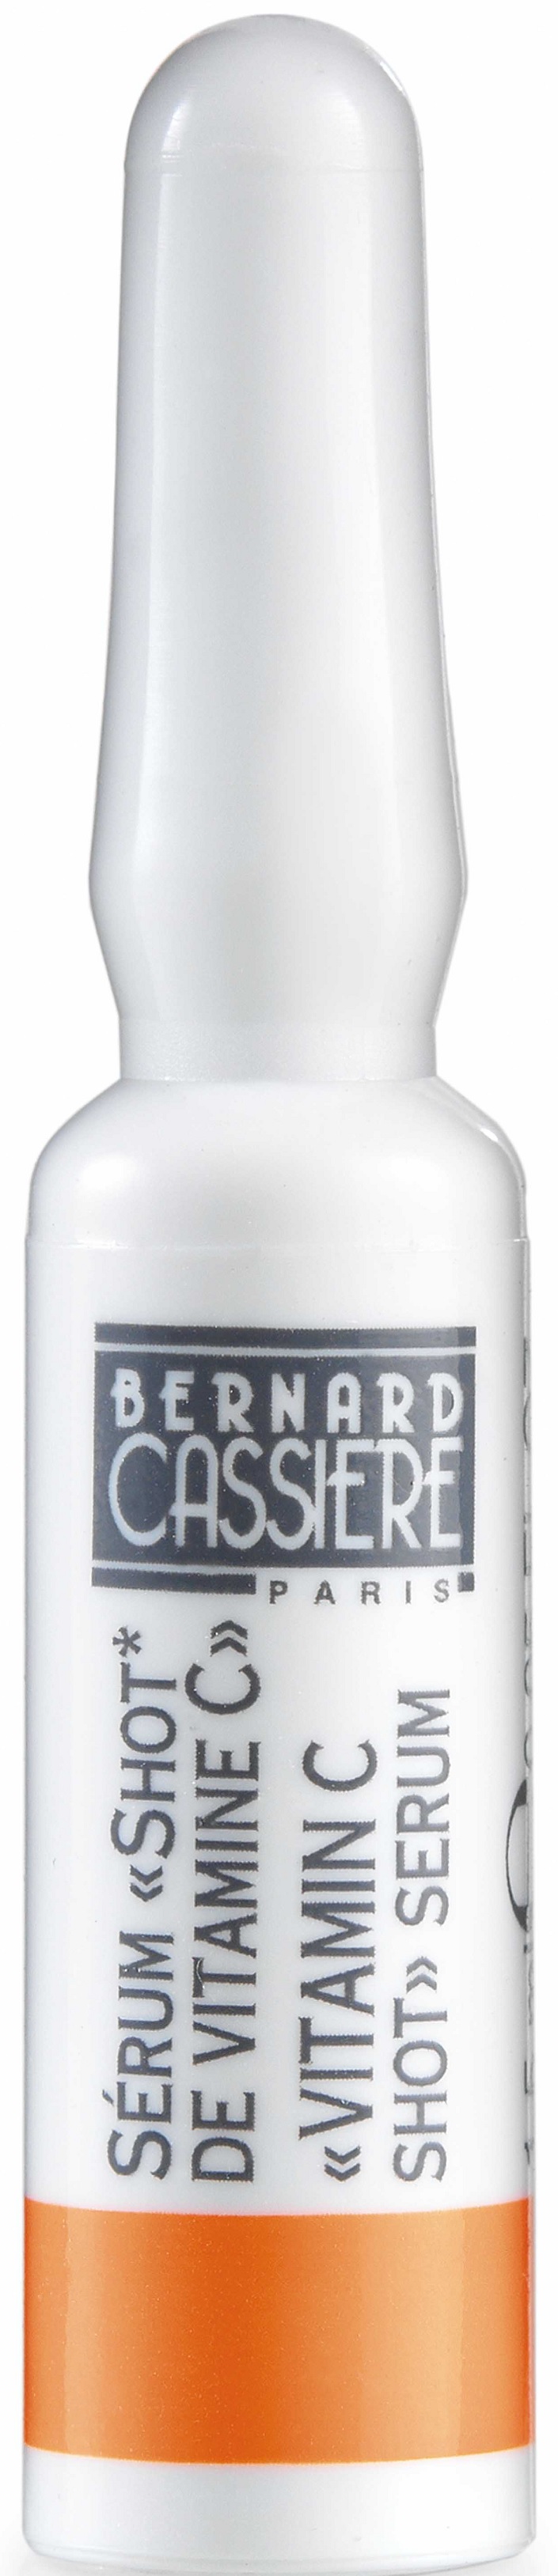 Bernard Cassière